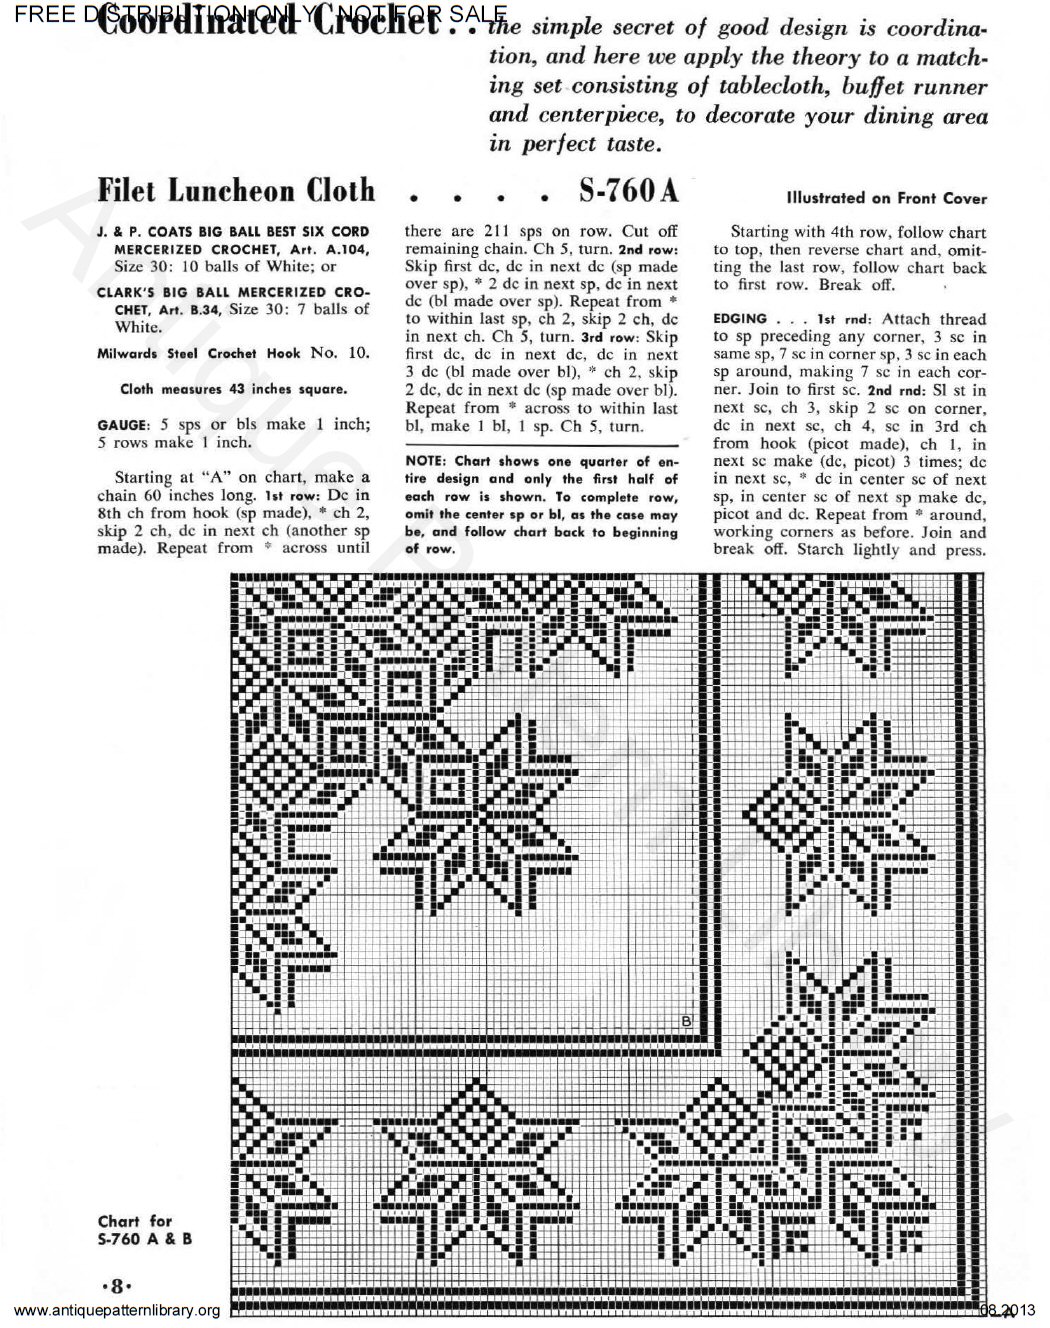 6-TA006 Coats & Clark's O.N.T. Filet Crochet Book No. 317 Priscilla Filet Crochet